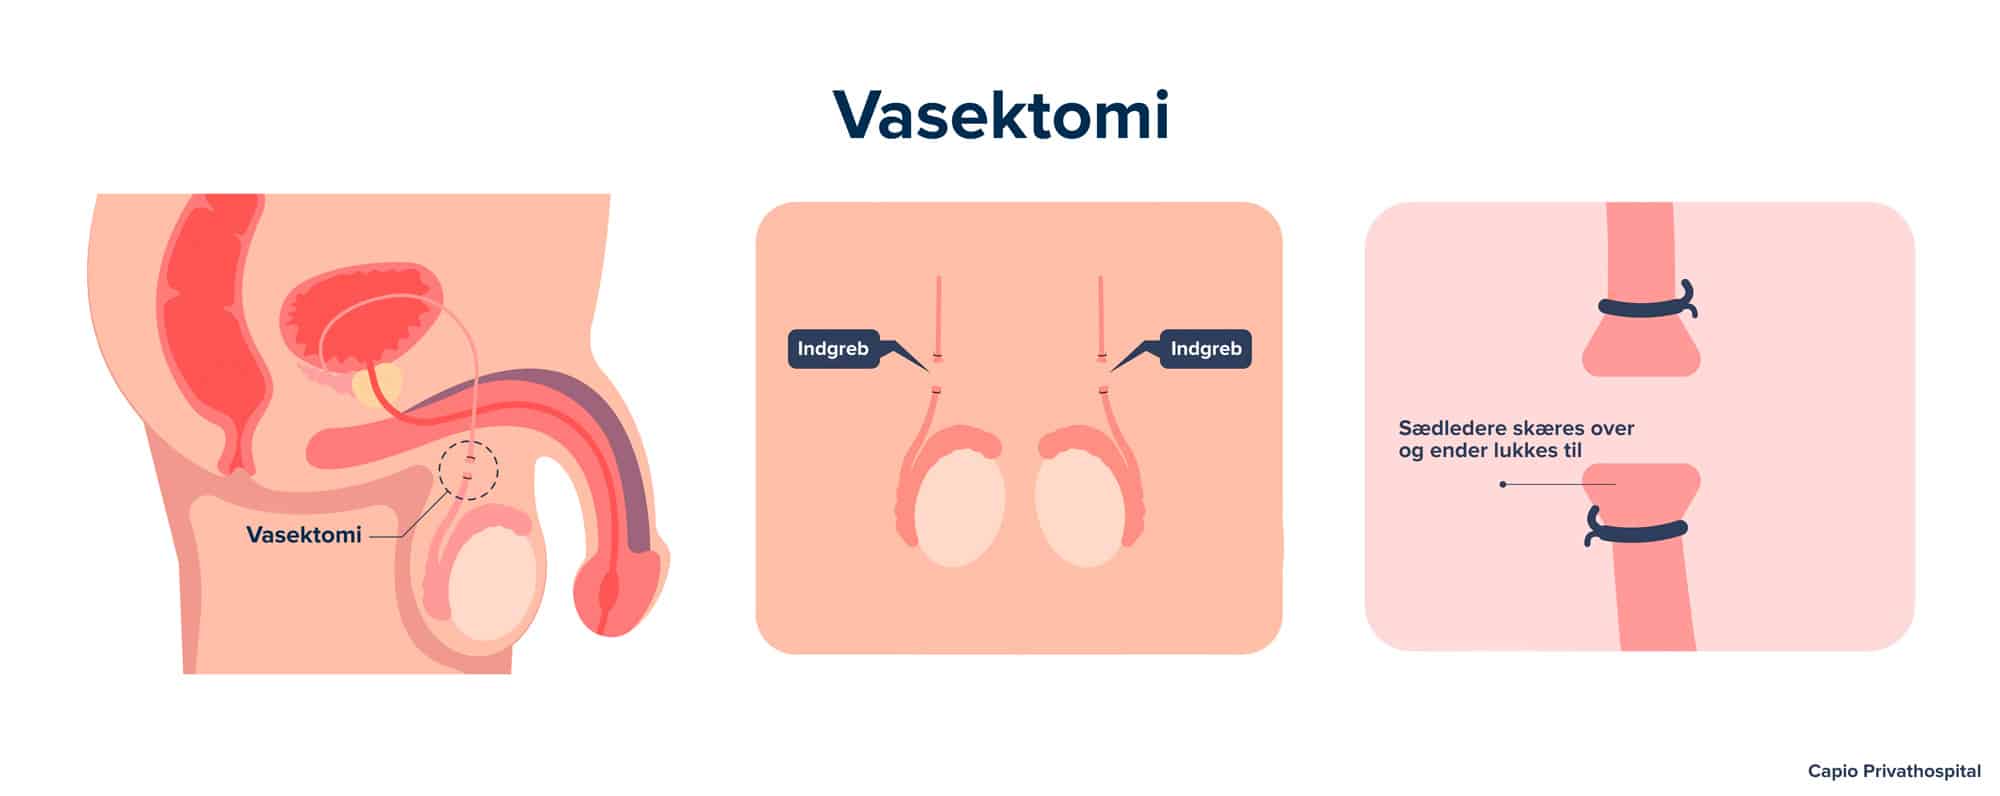 Vasektomi